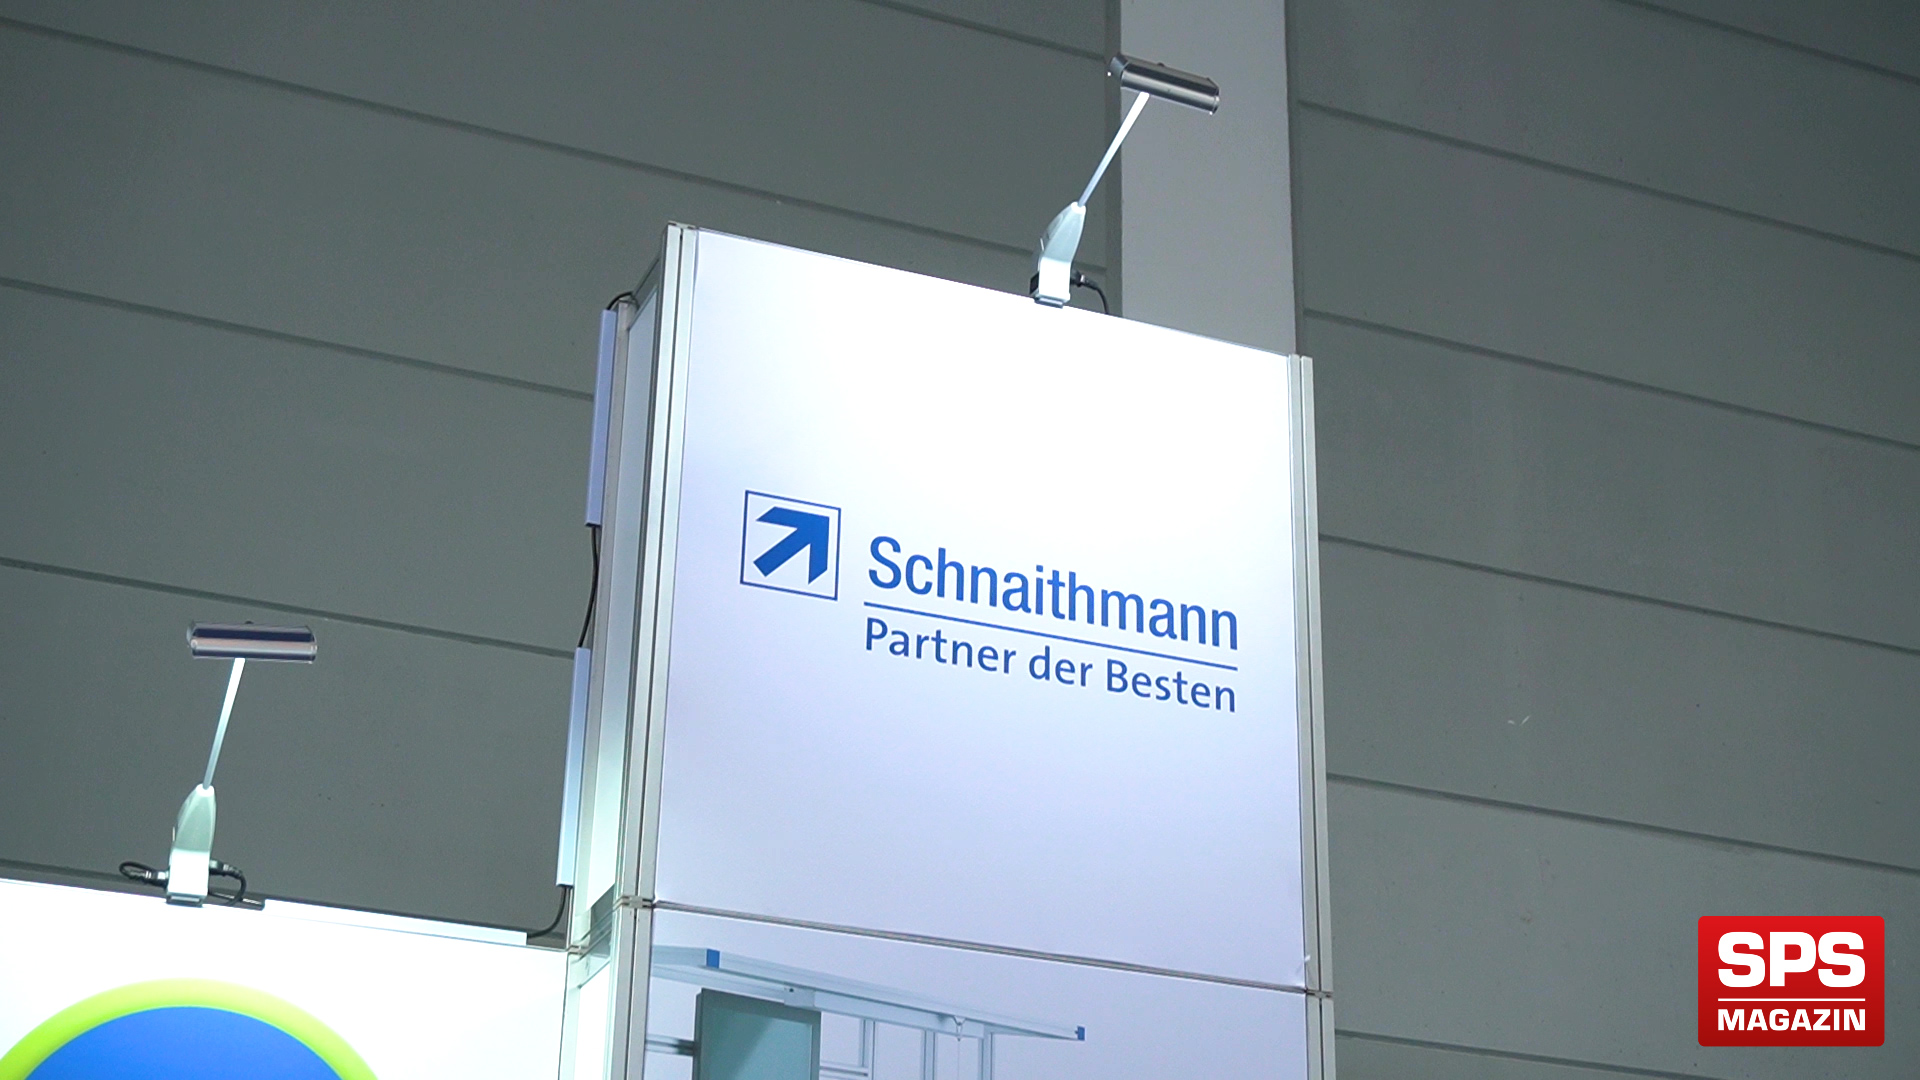 SPS-MAGAZIN auf der AAA Friedrichshafen zu Besuch bei Schnaithmann